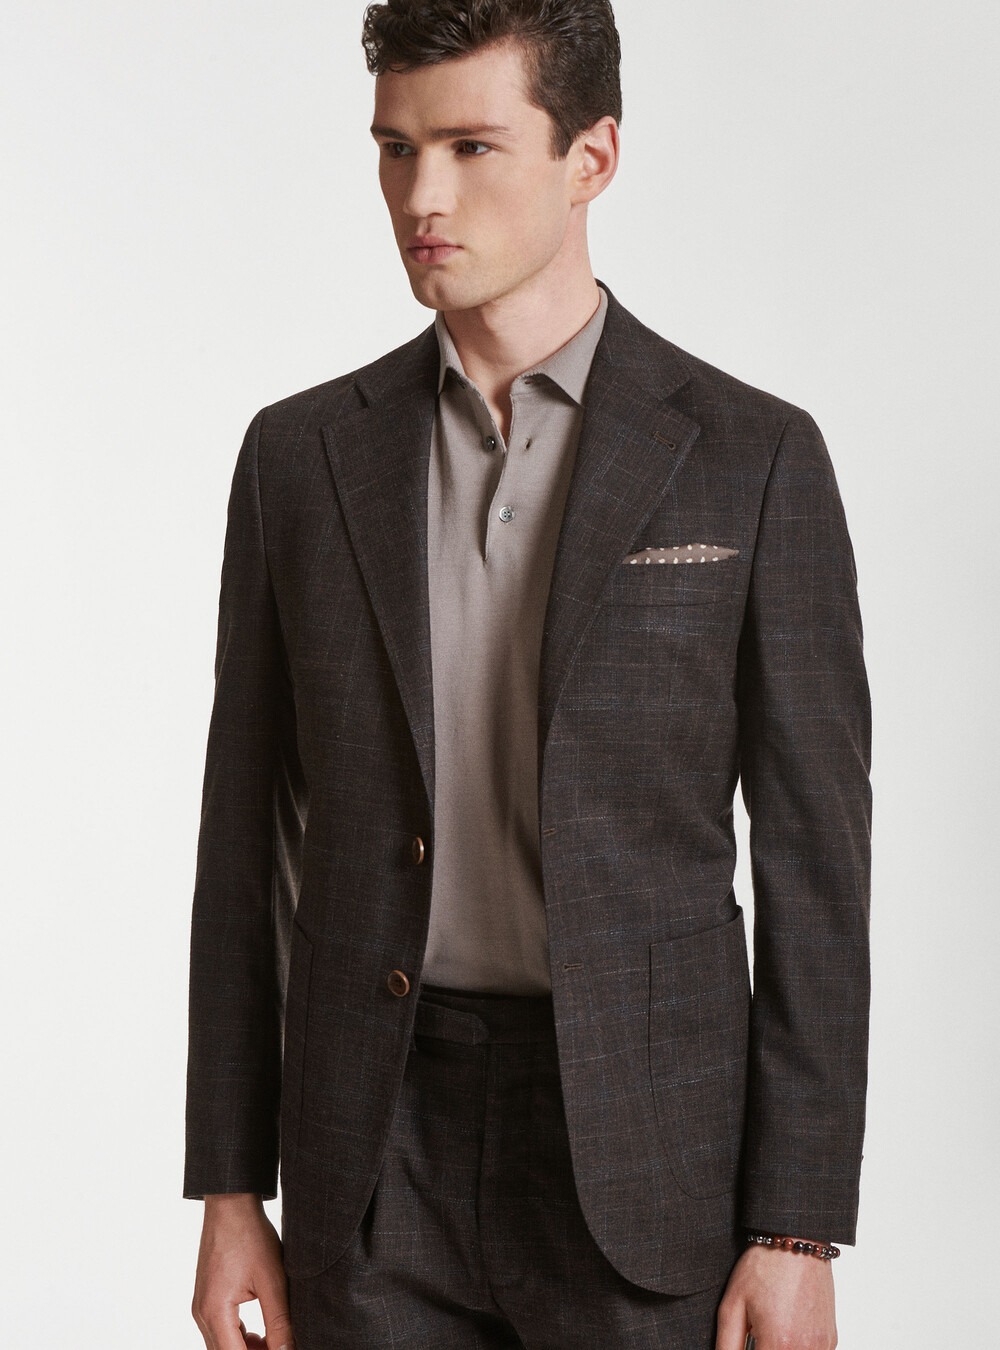 Suit blazer in wool, cotton and linen | GutteridgeUS | Men's catalog ...